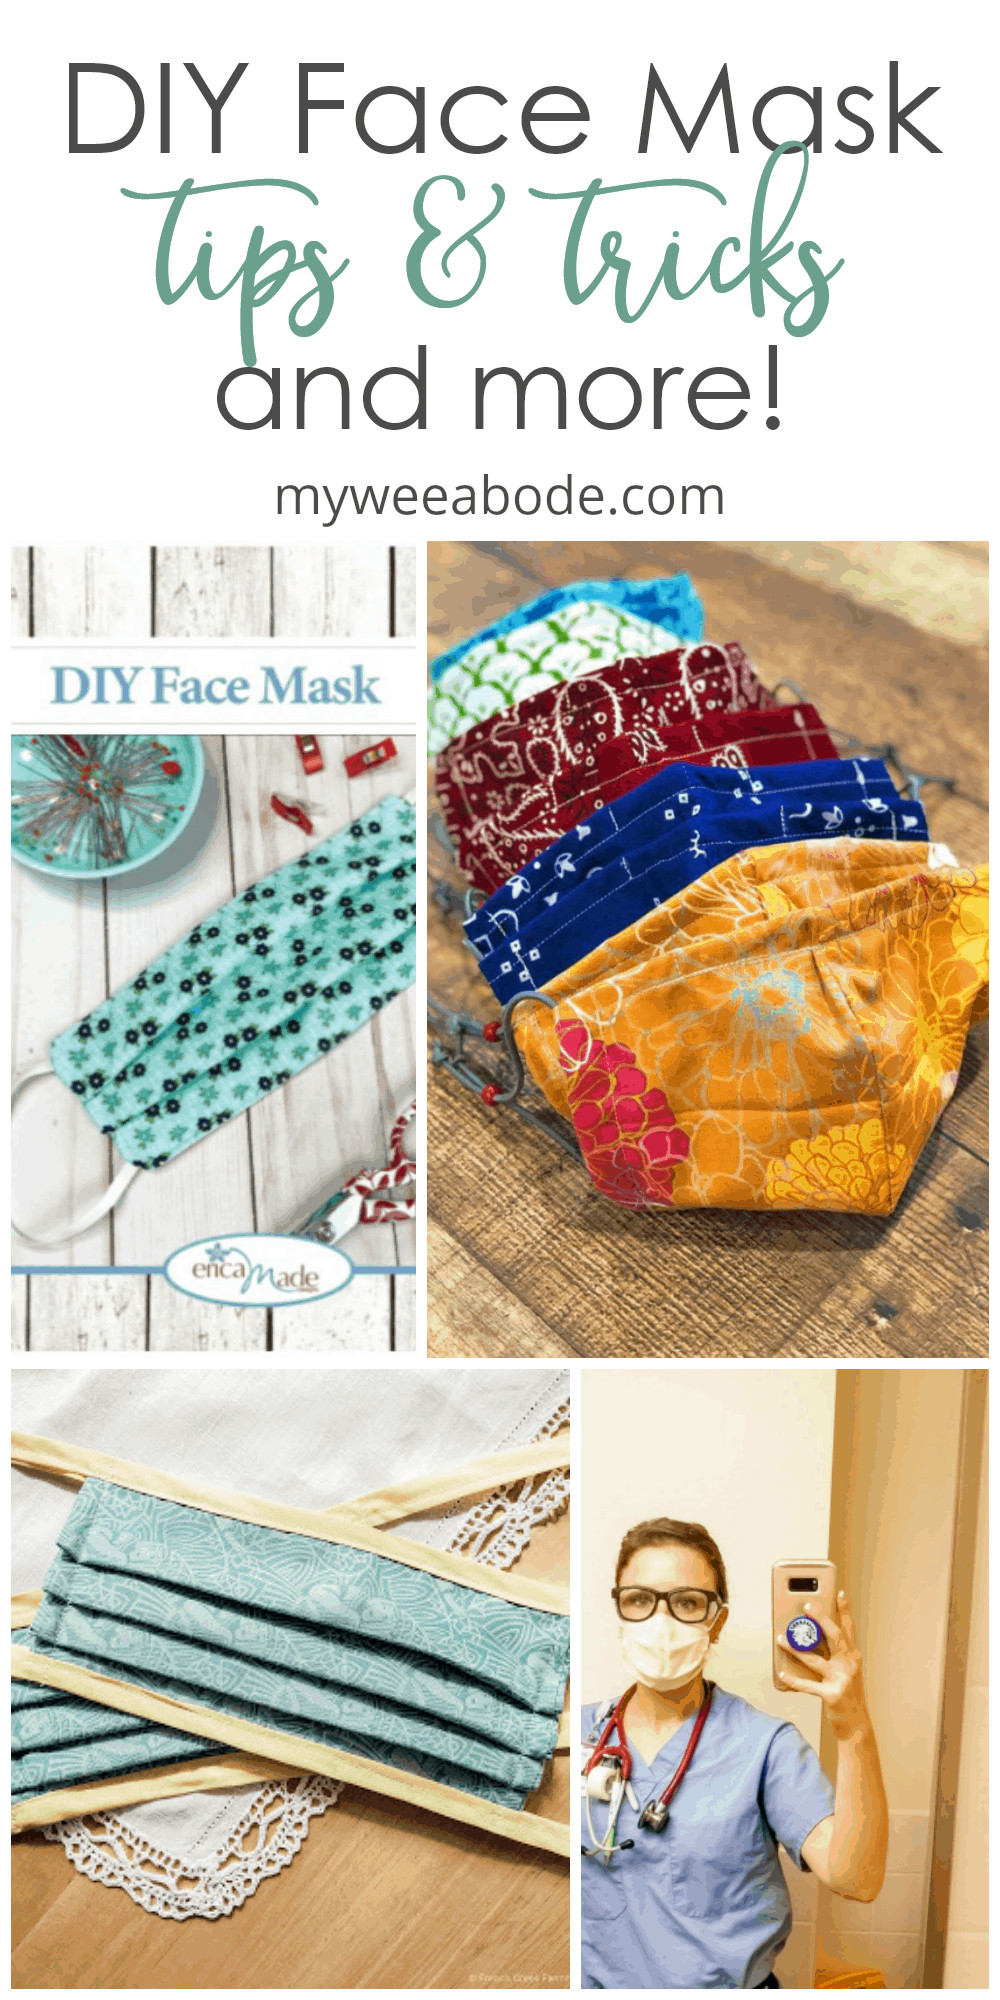 DIY Facial Mask
 DIY Face Mask Tips and Tricks PLUS a Bonus my wee abode